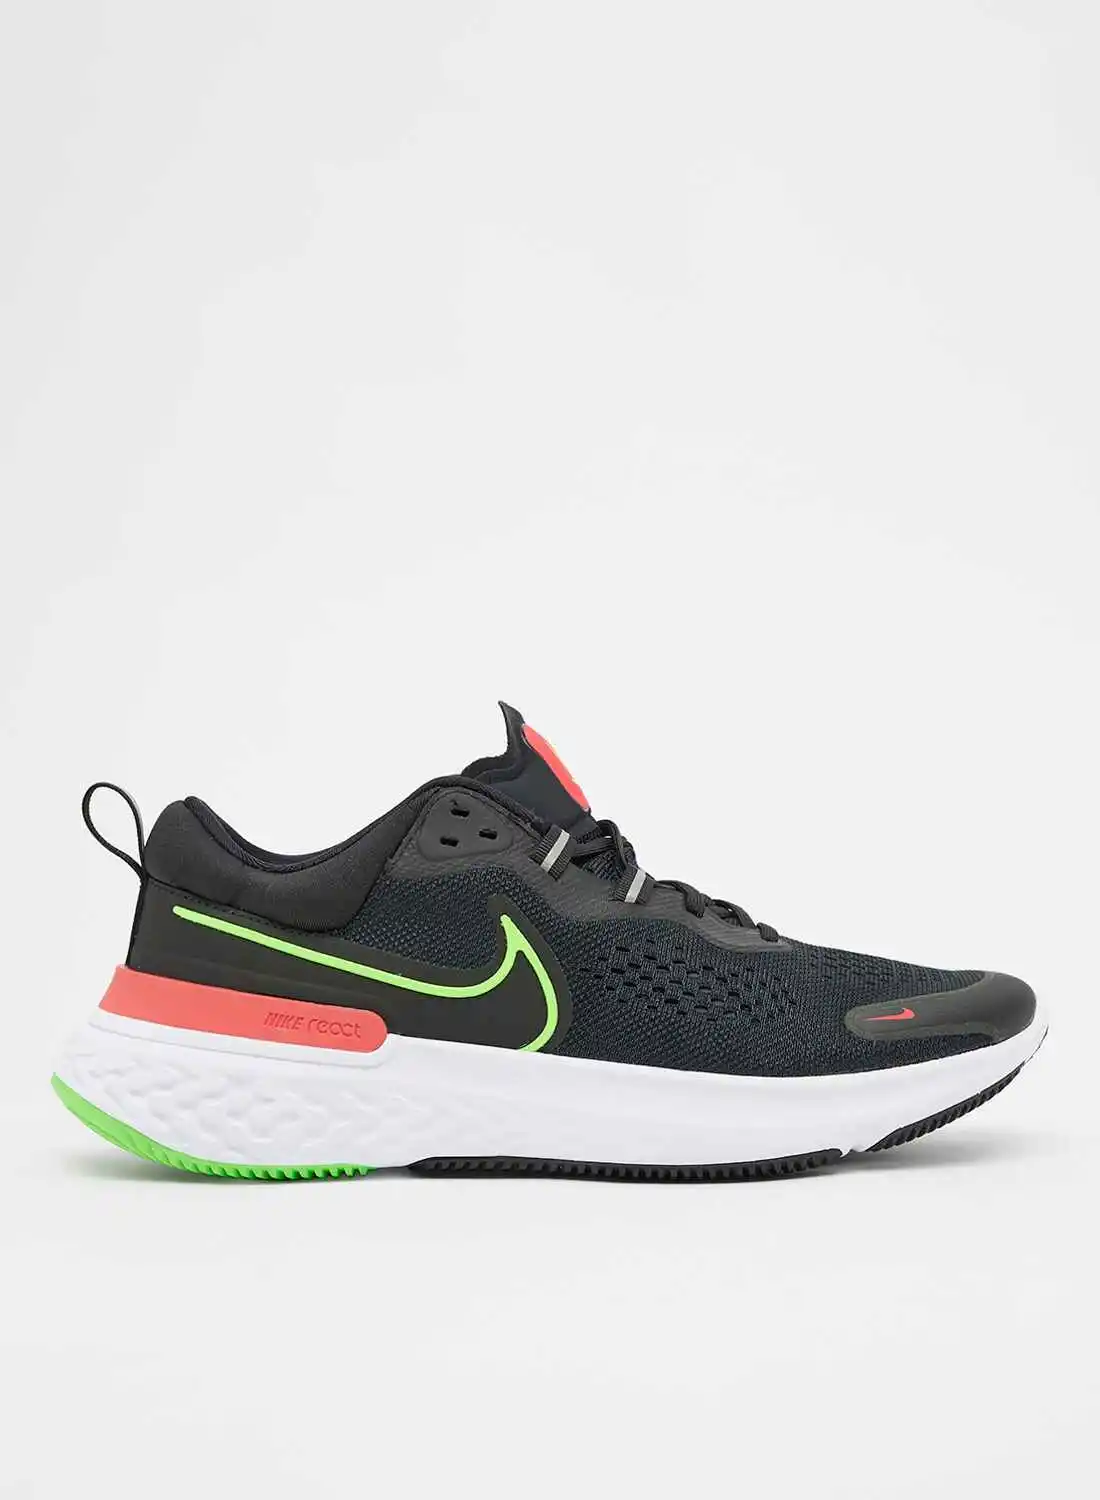 Nike React Miller 2 Road Running Shoes